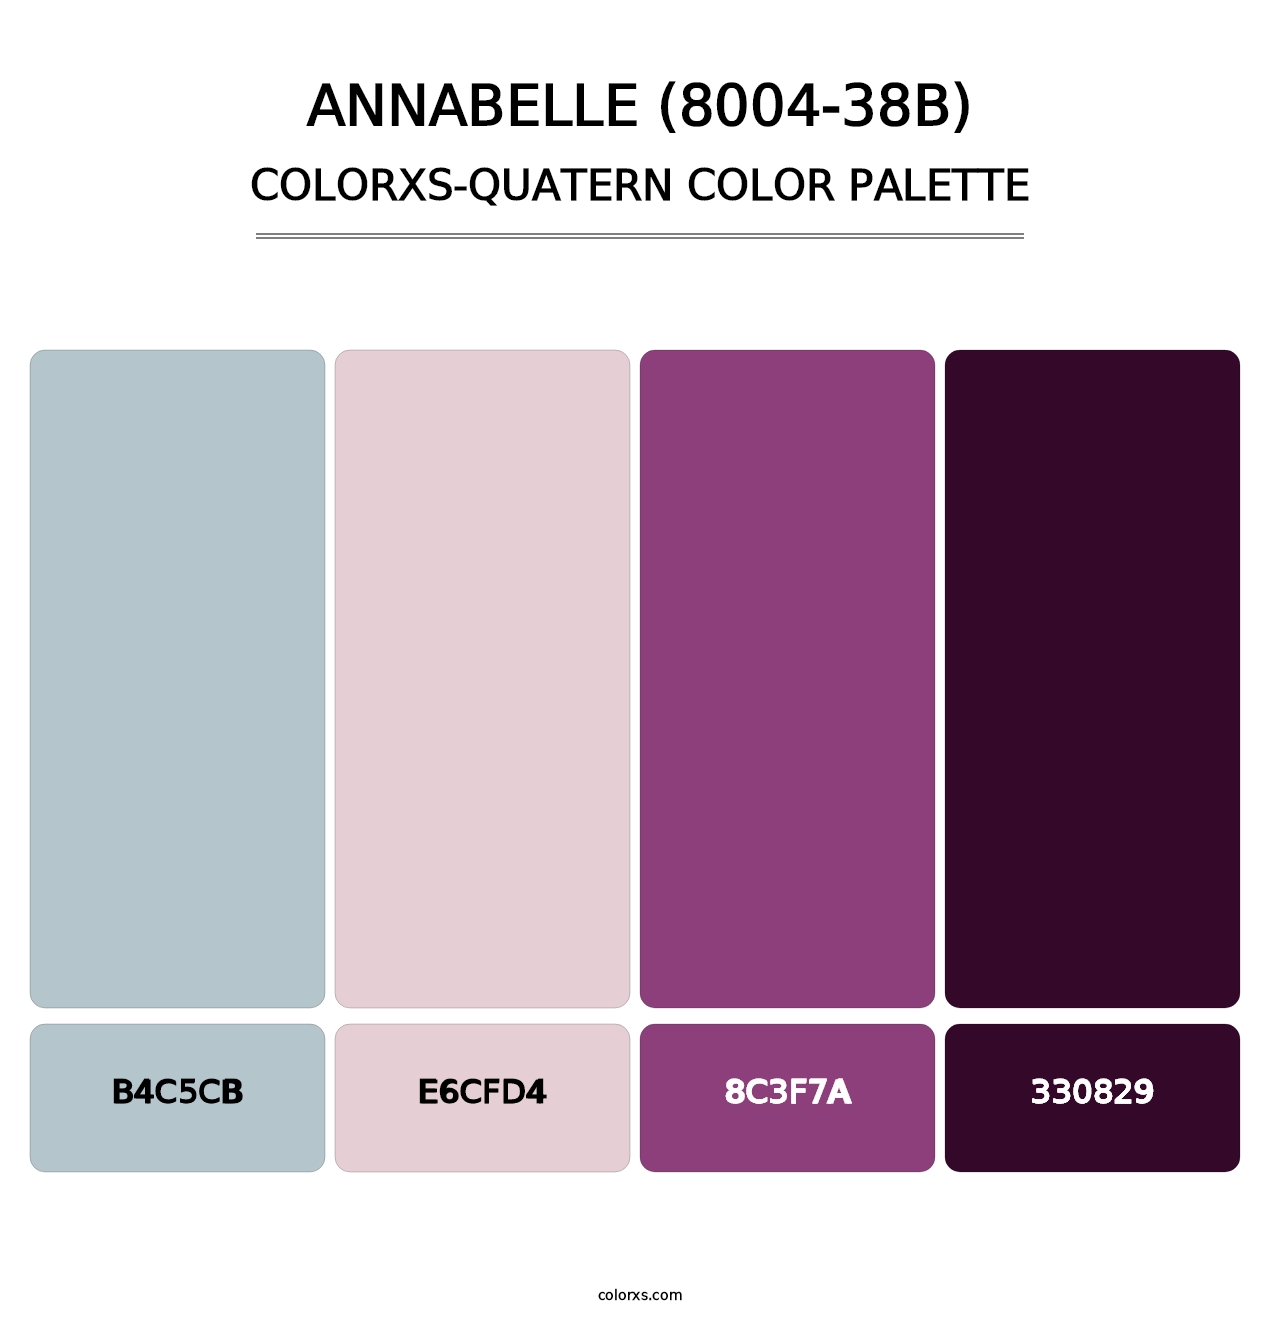 Annabelle (8004-38B) - Colorxs Quatern Palette